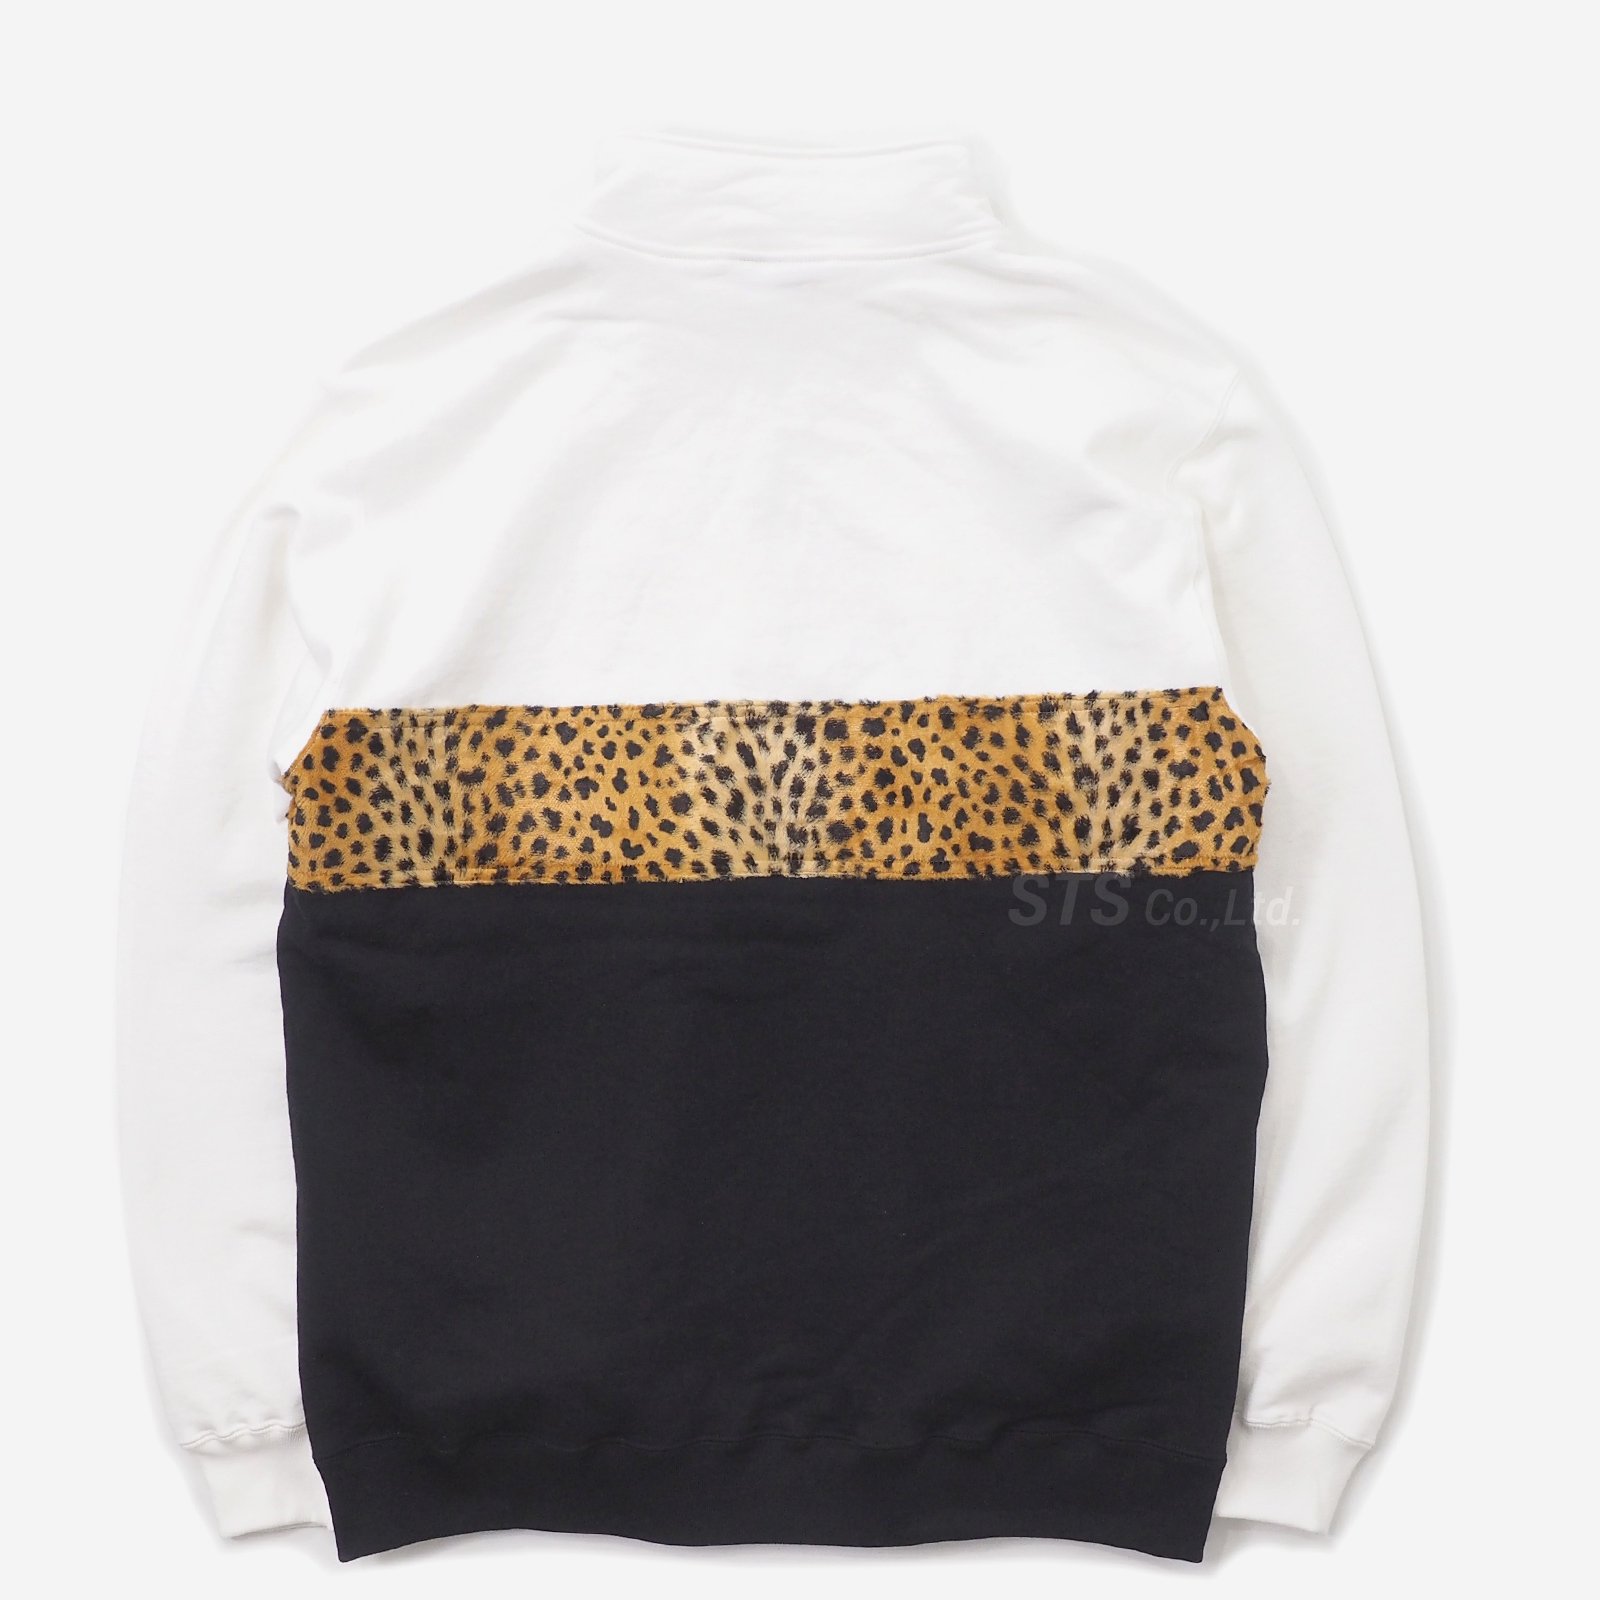 Supreme - Leopard Panel Half Zip Sweatshirt - ParkSIDER